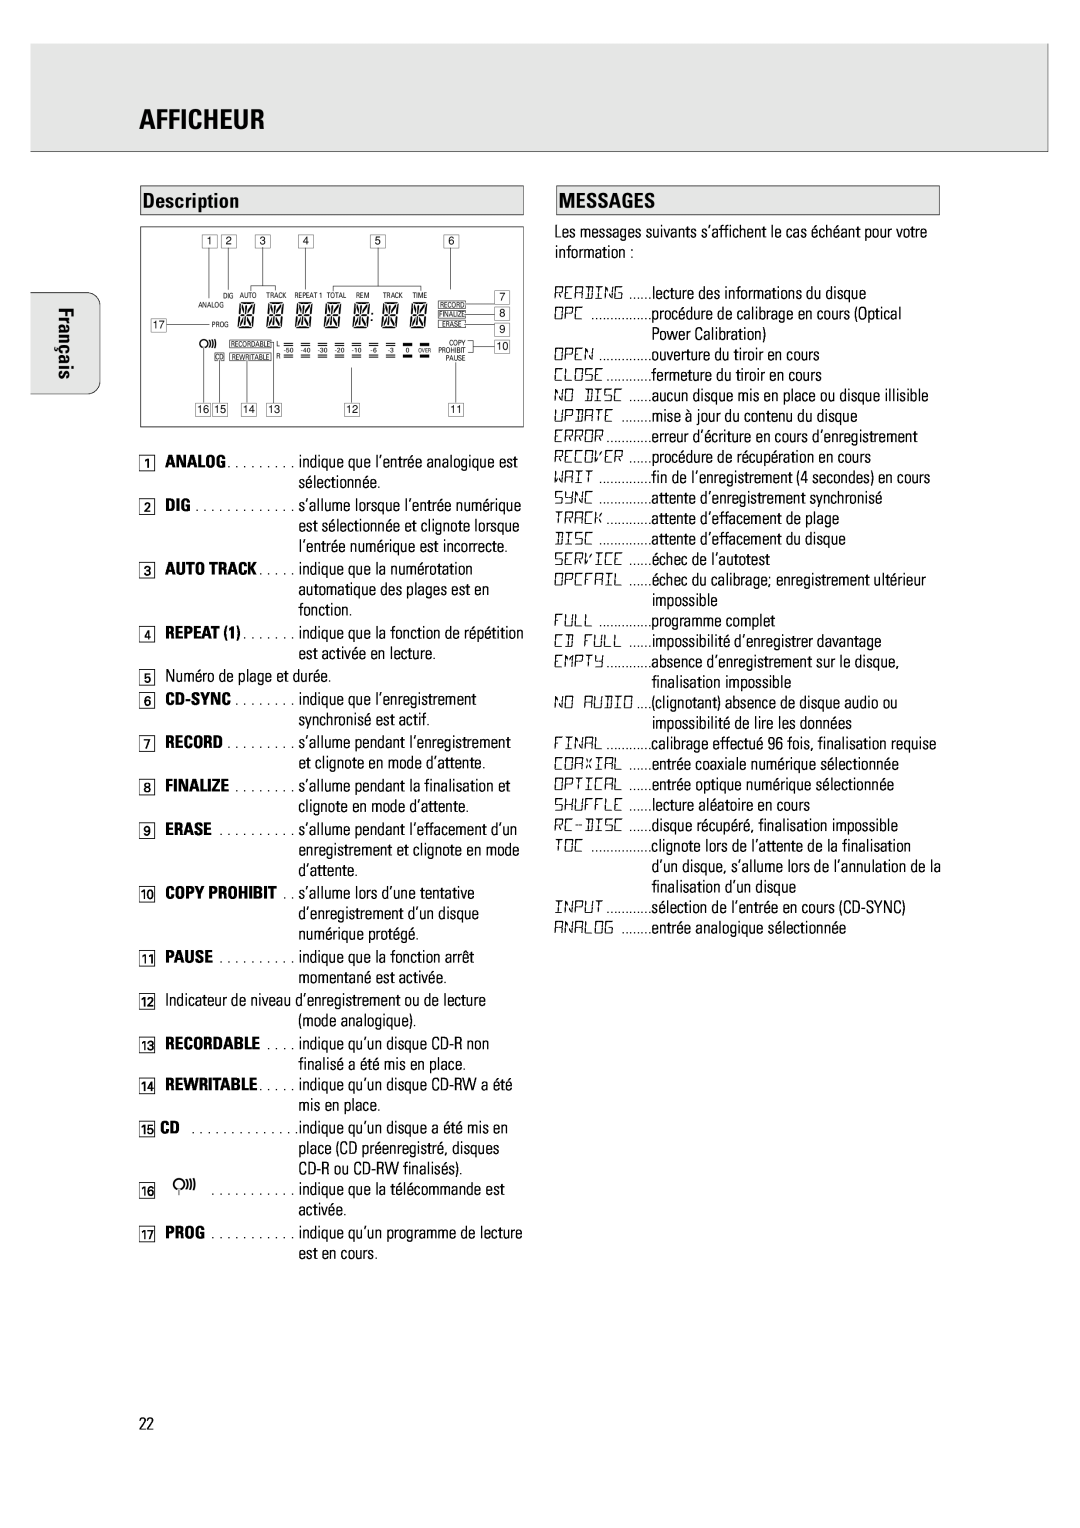 Philips CDR 760 manual Afficheur, Messages, Description 